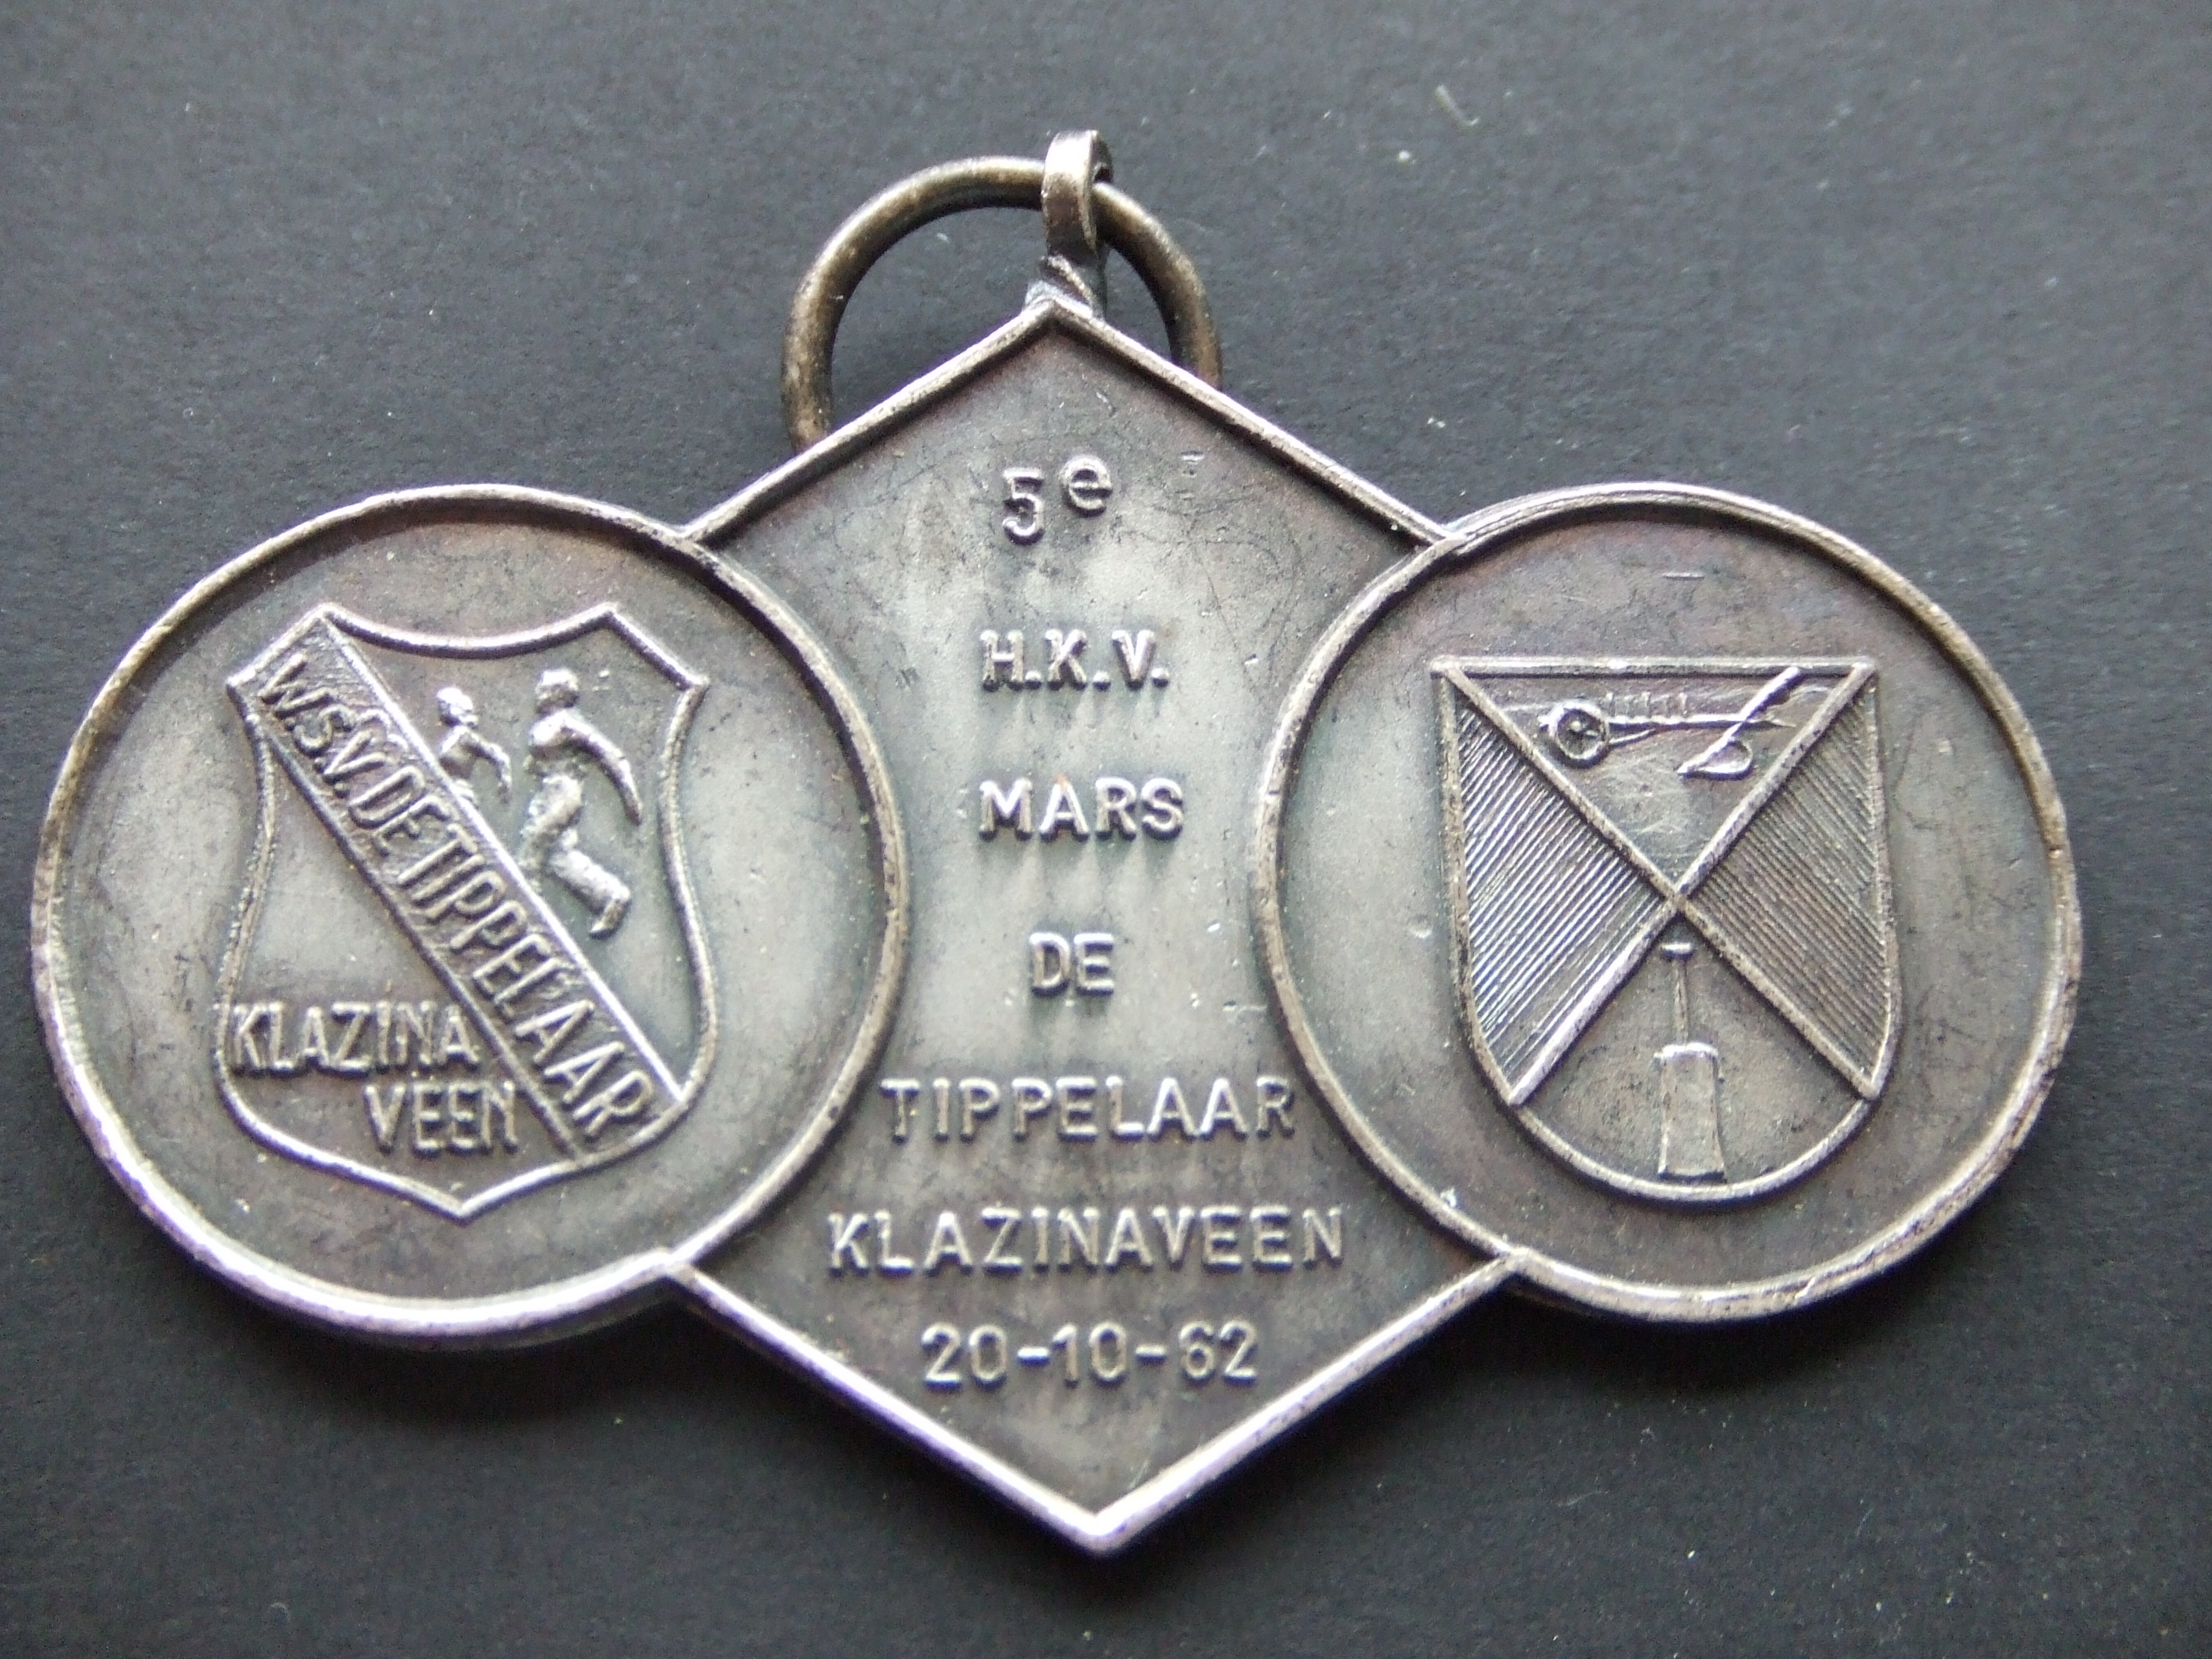 Wandelsportvereniging De Tippelaars Klazienaveen 1962